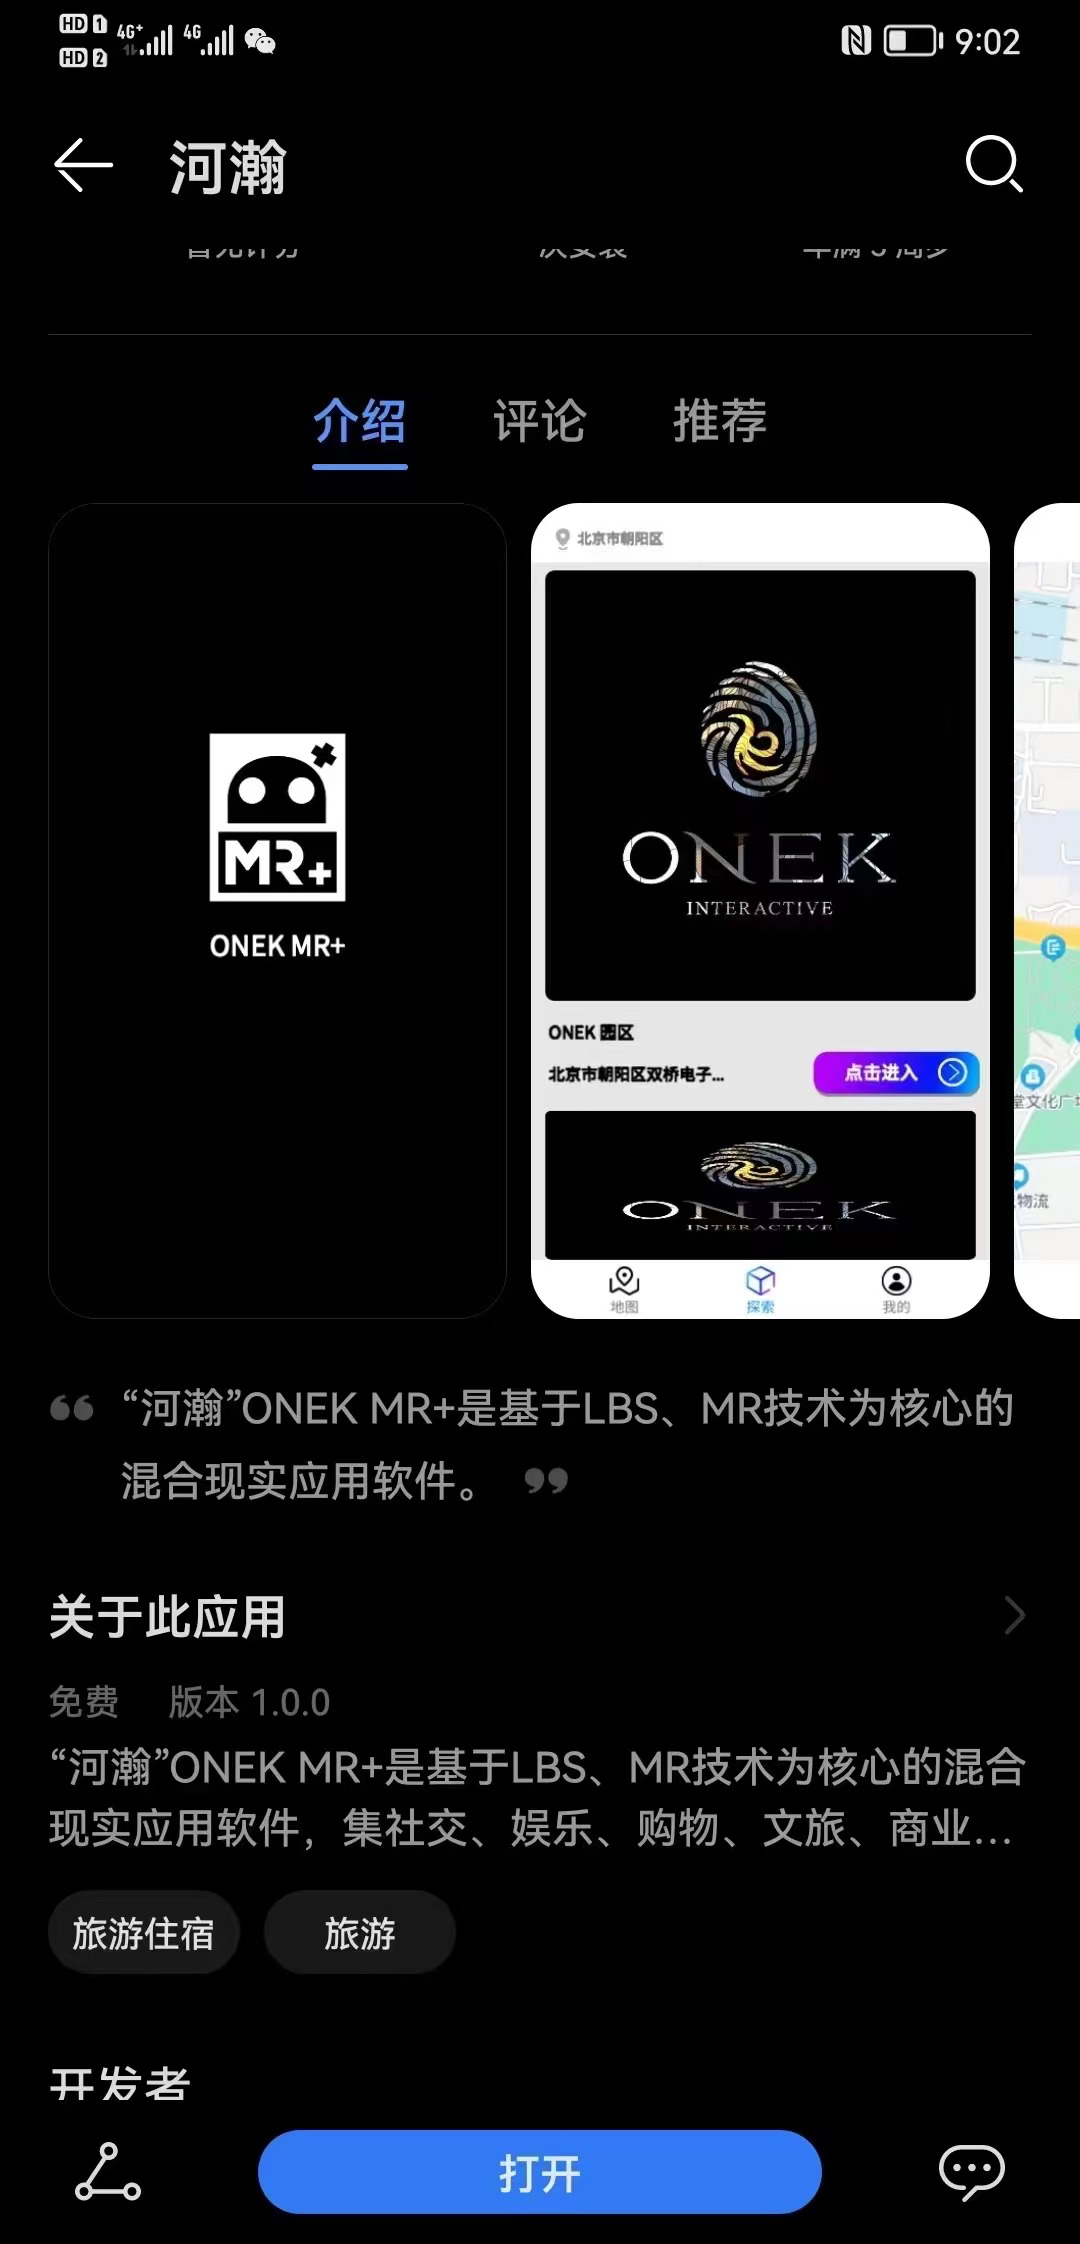 元宇宙MR入口已开放 ONEK MR+“河瀚”抢占元宇宙商业化高地